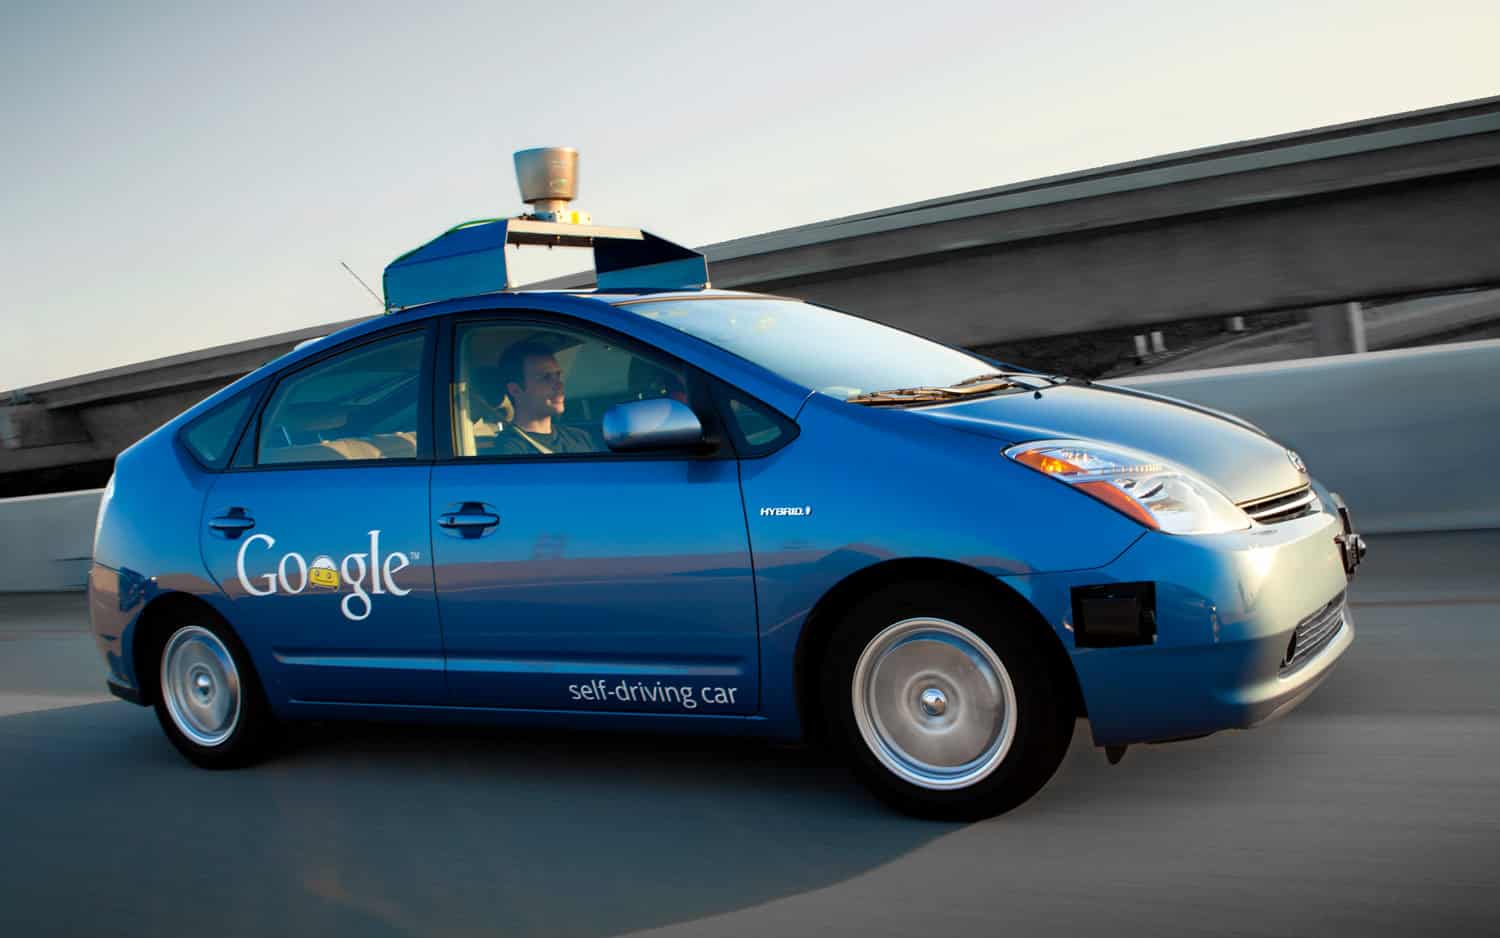 Google's autonomous vehicle